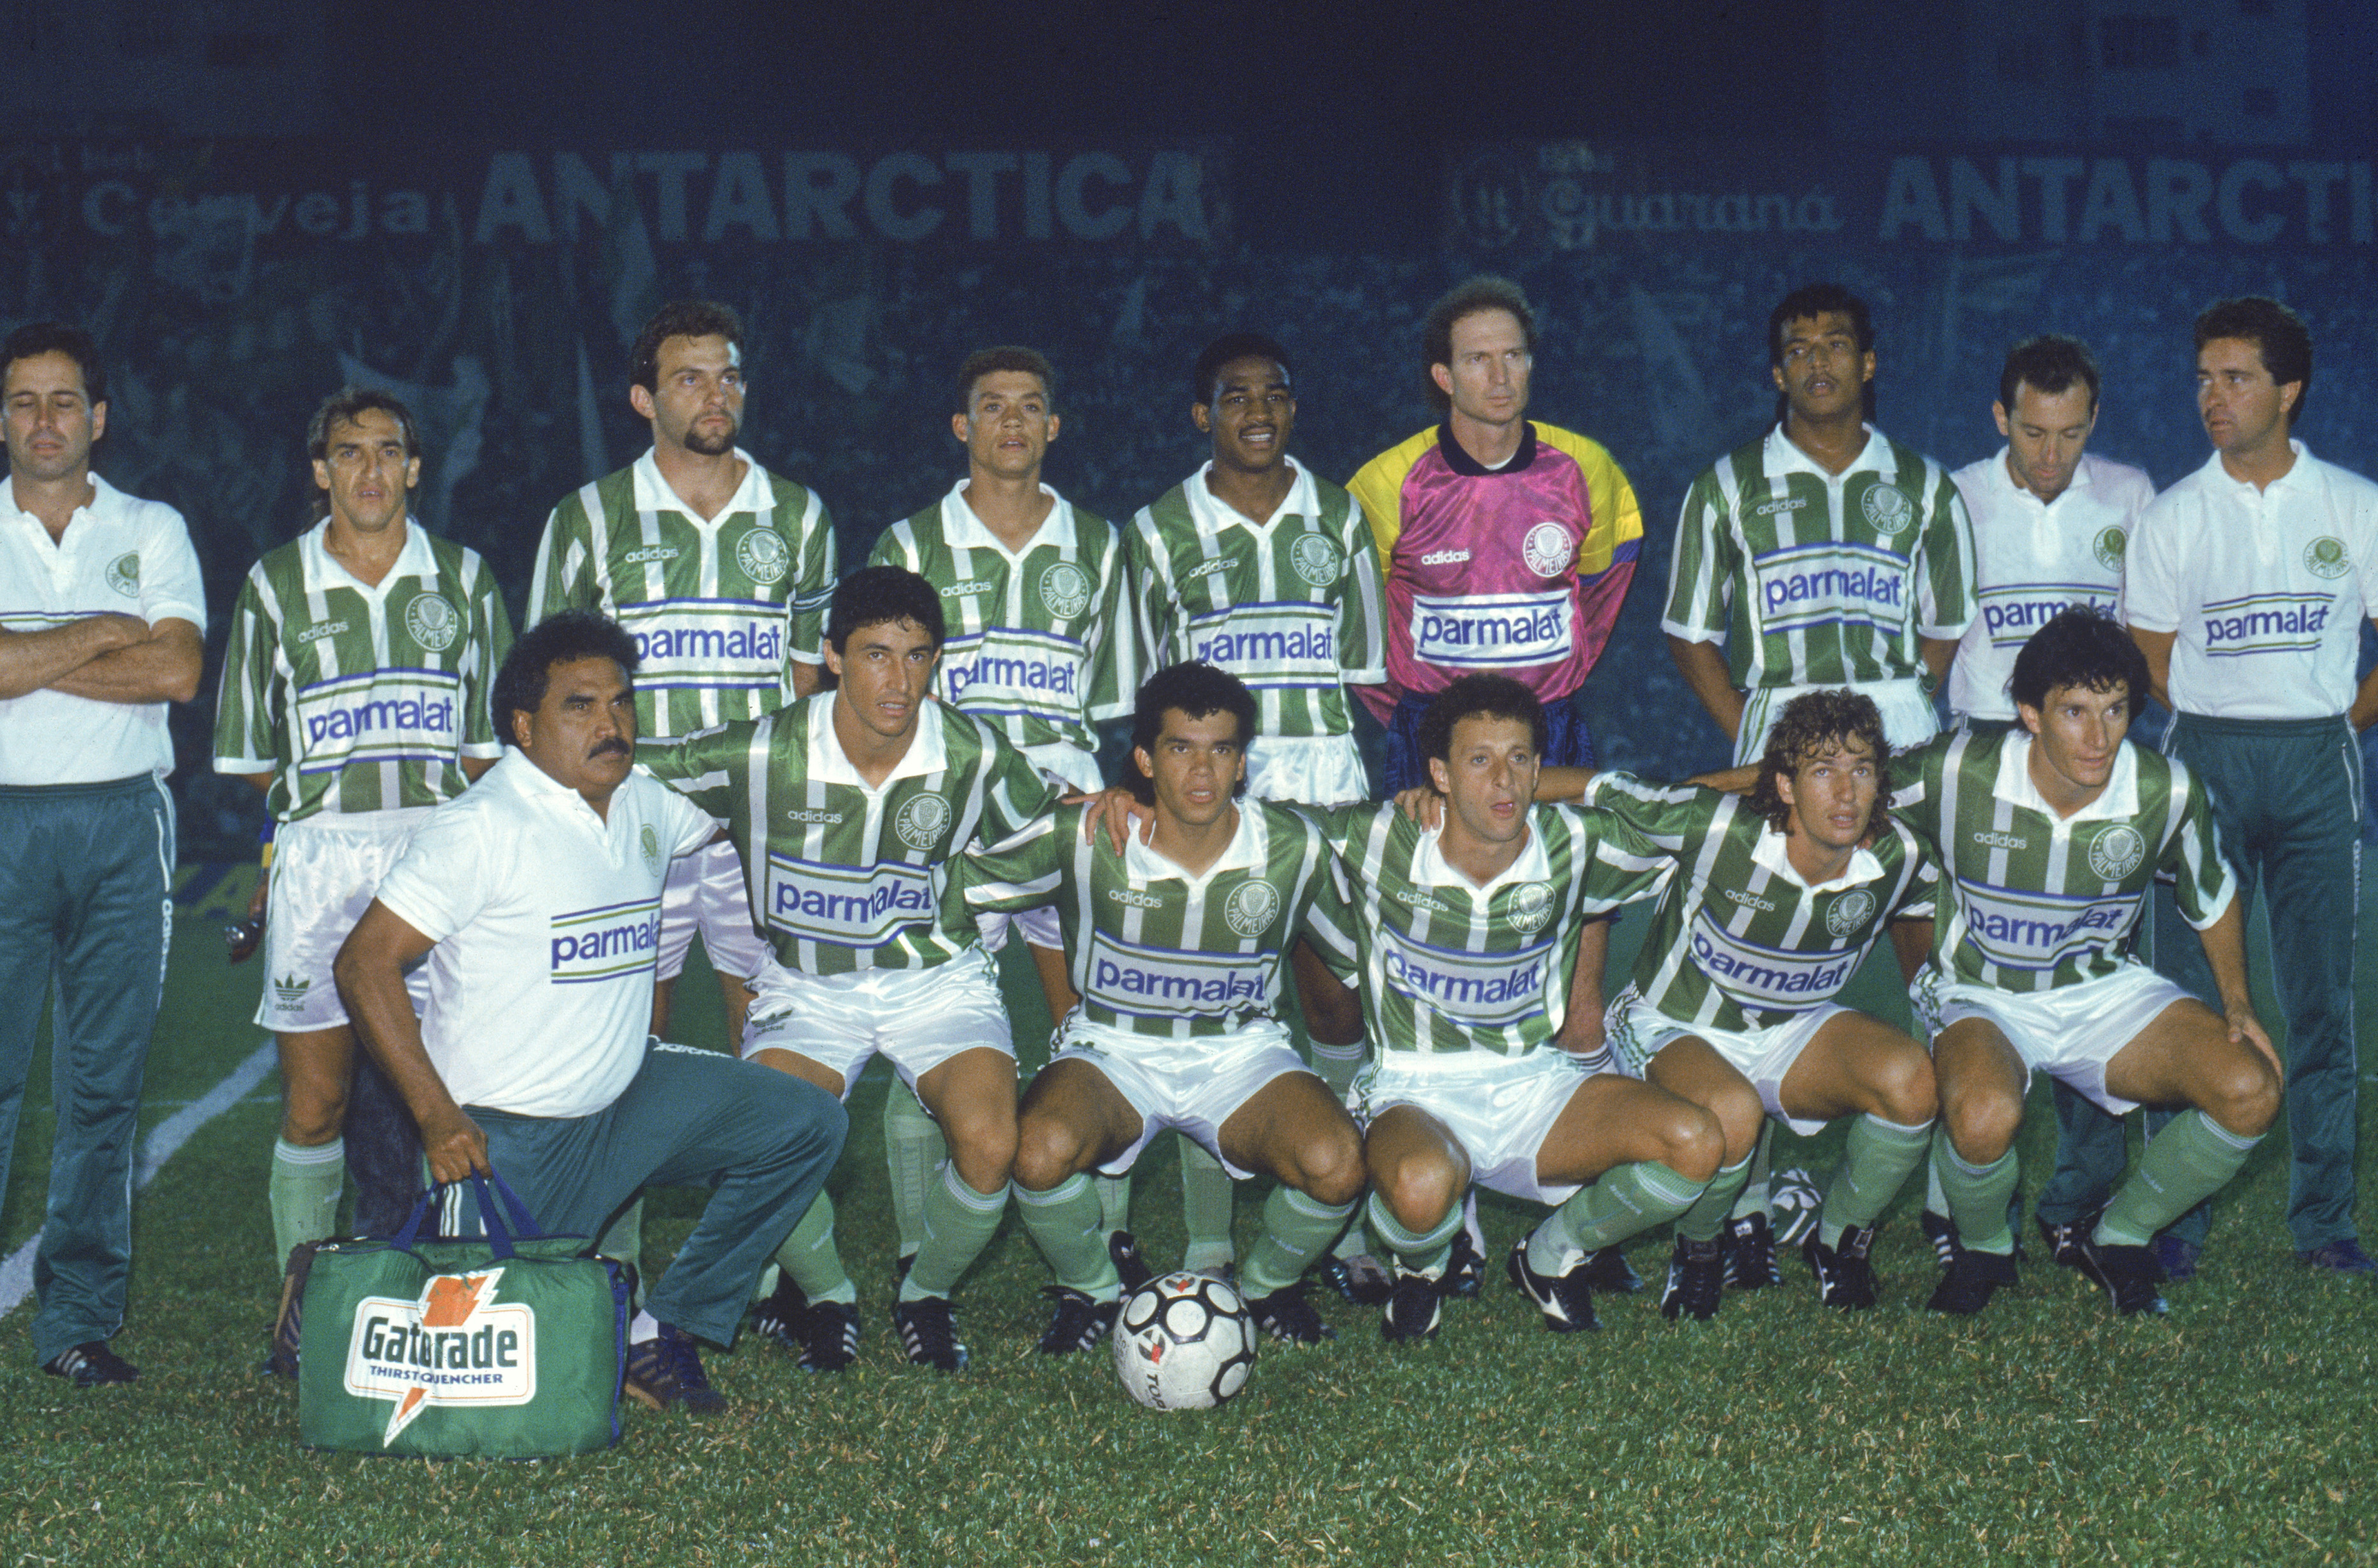 Time posado do Palmeiras, estreando o novo uniforme com o patrocínio da Parmalat, no Parque Antártica -